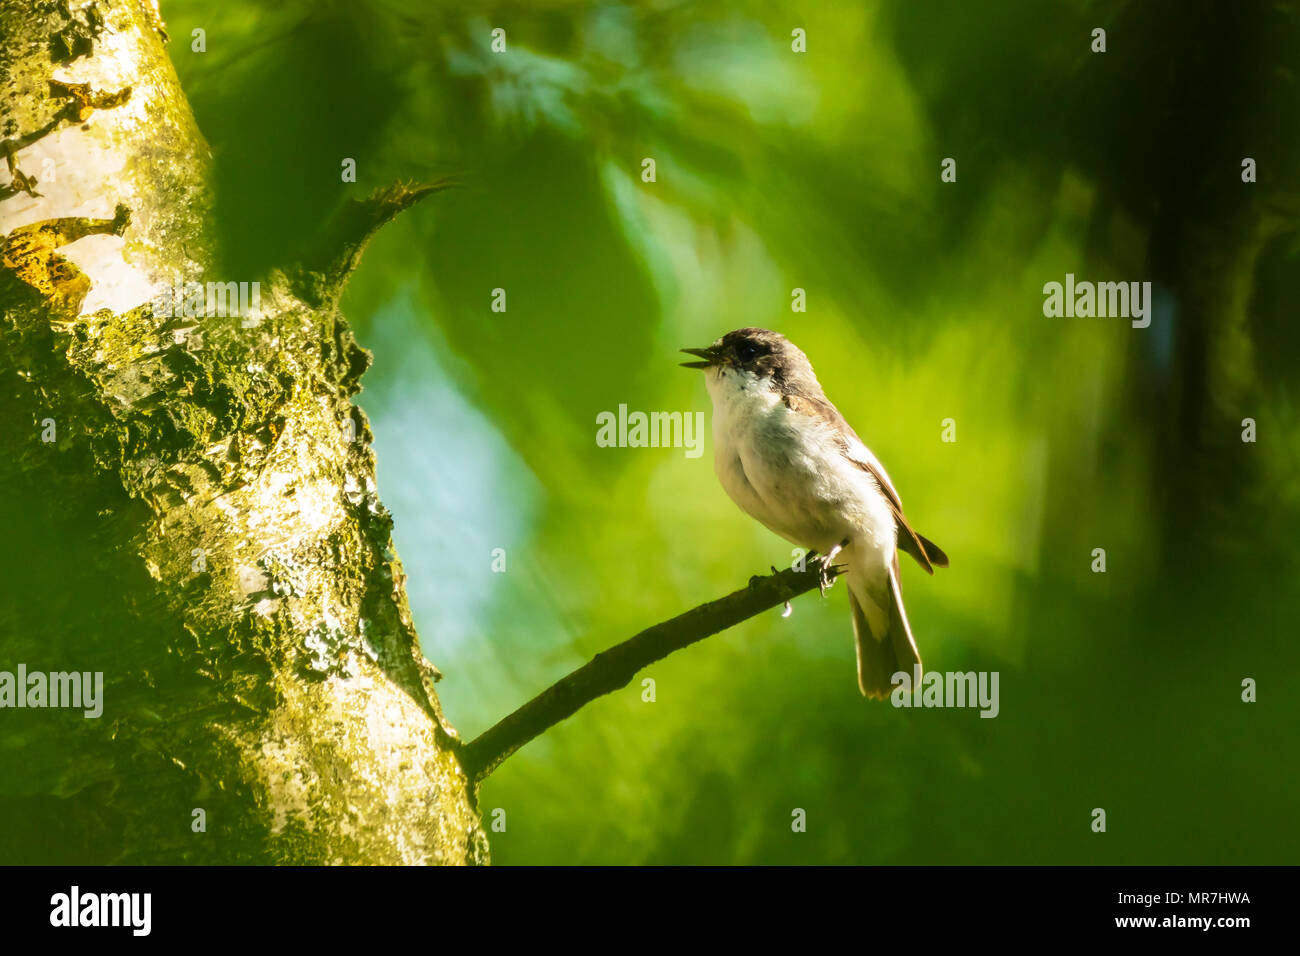 Primer plano de un europeo de aves papamoscas cerrojillo (Ficedula hypoleuca) donde se posan en una rama, cantando en un bosque verde durante la primavera temporada de cría. Foto de stock